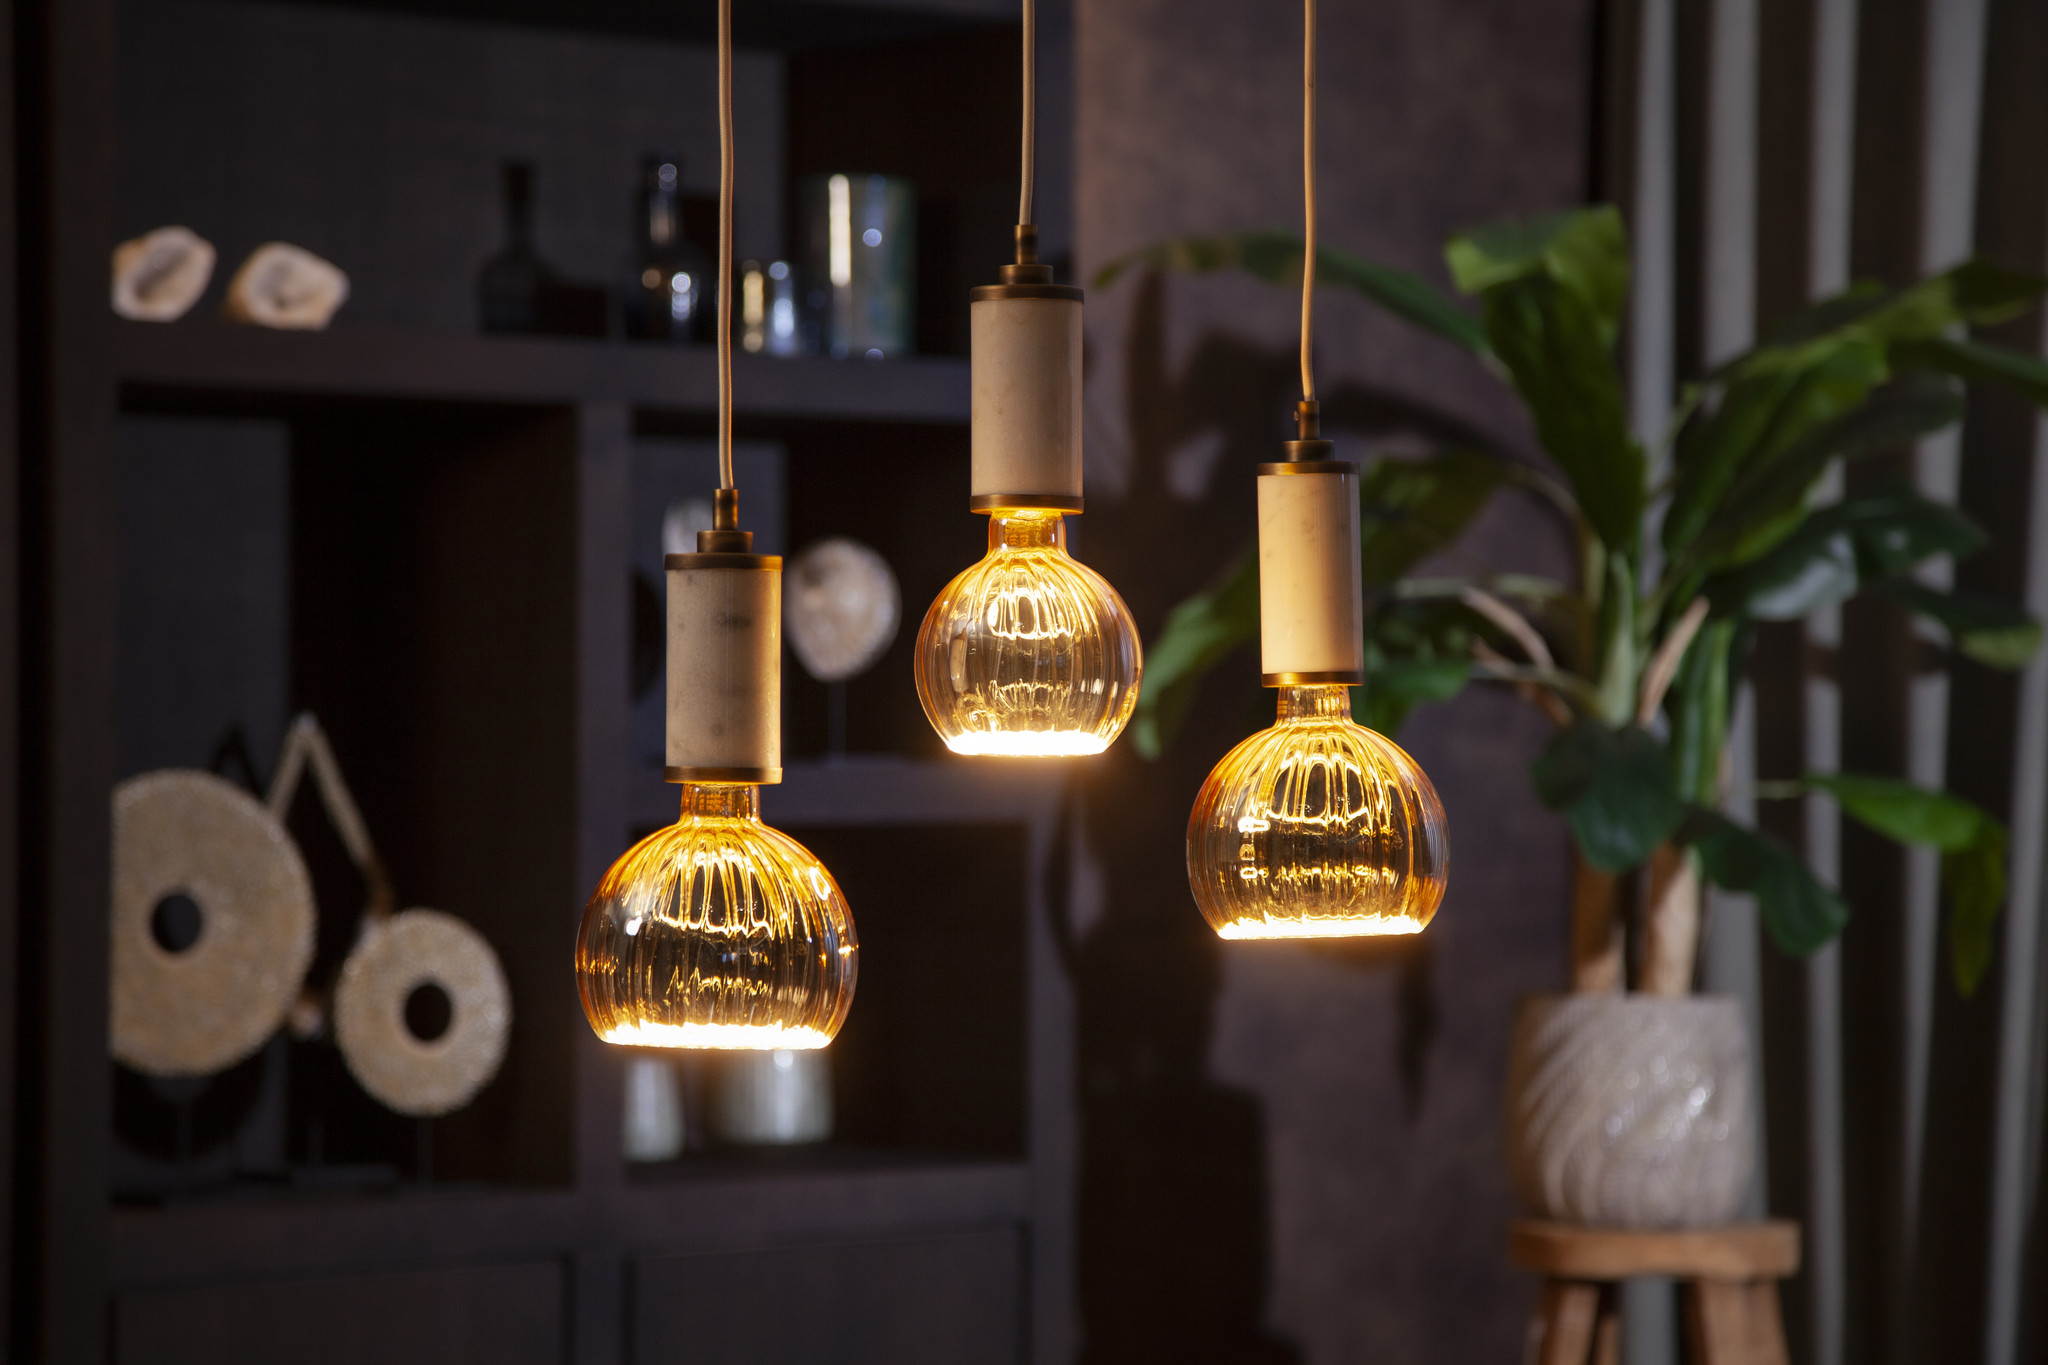 bevel mosterd Leonardoda Segula LED lamp E27 | Floating Globe 125 mm | Goud Geribbeld • Van den  Heuvel Verlichting